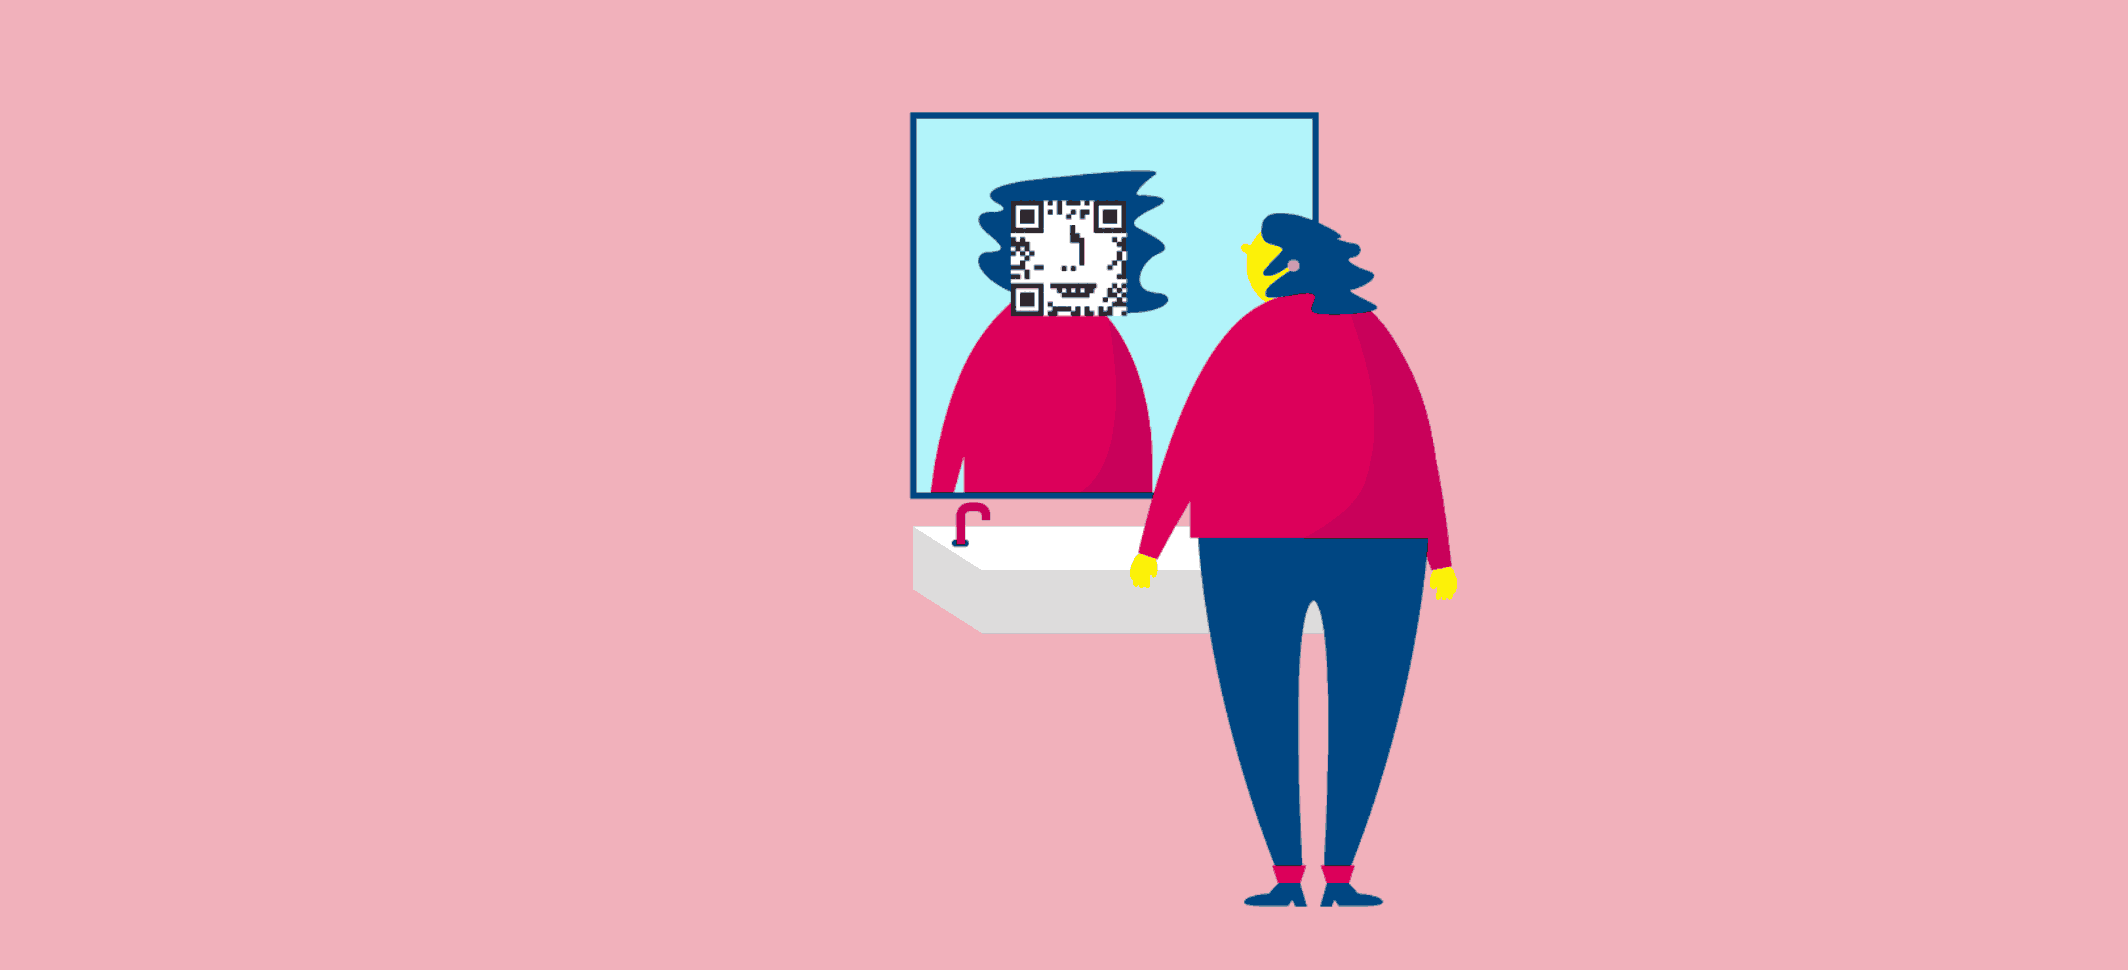 Eine Person blickt in einen Spiegel, in dem ihr verpixeltes Spiegelbild zu sehen ist